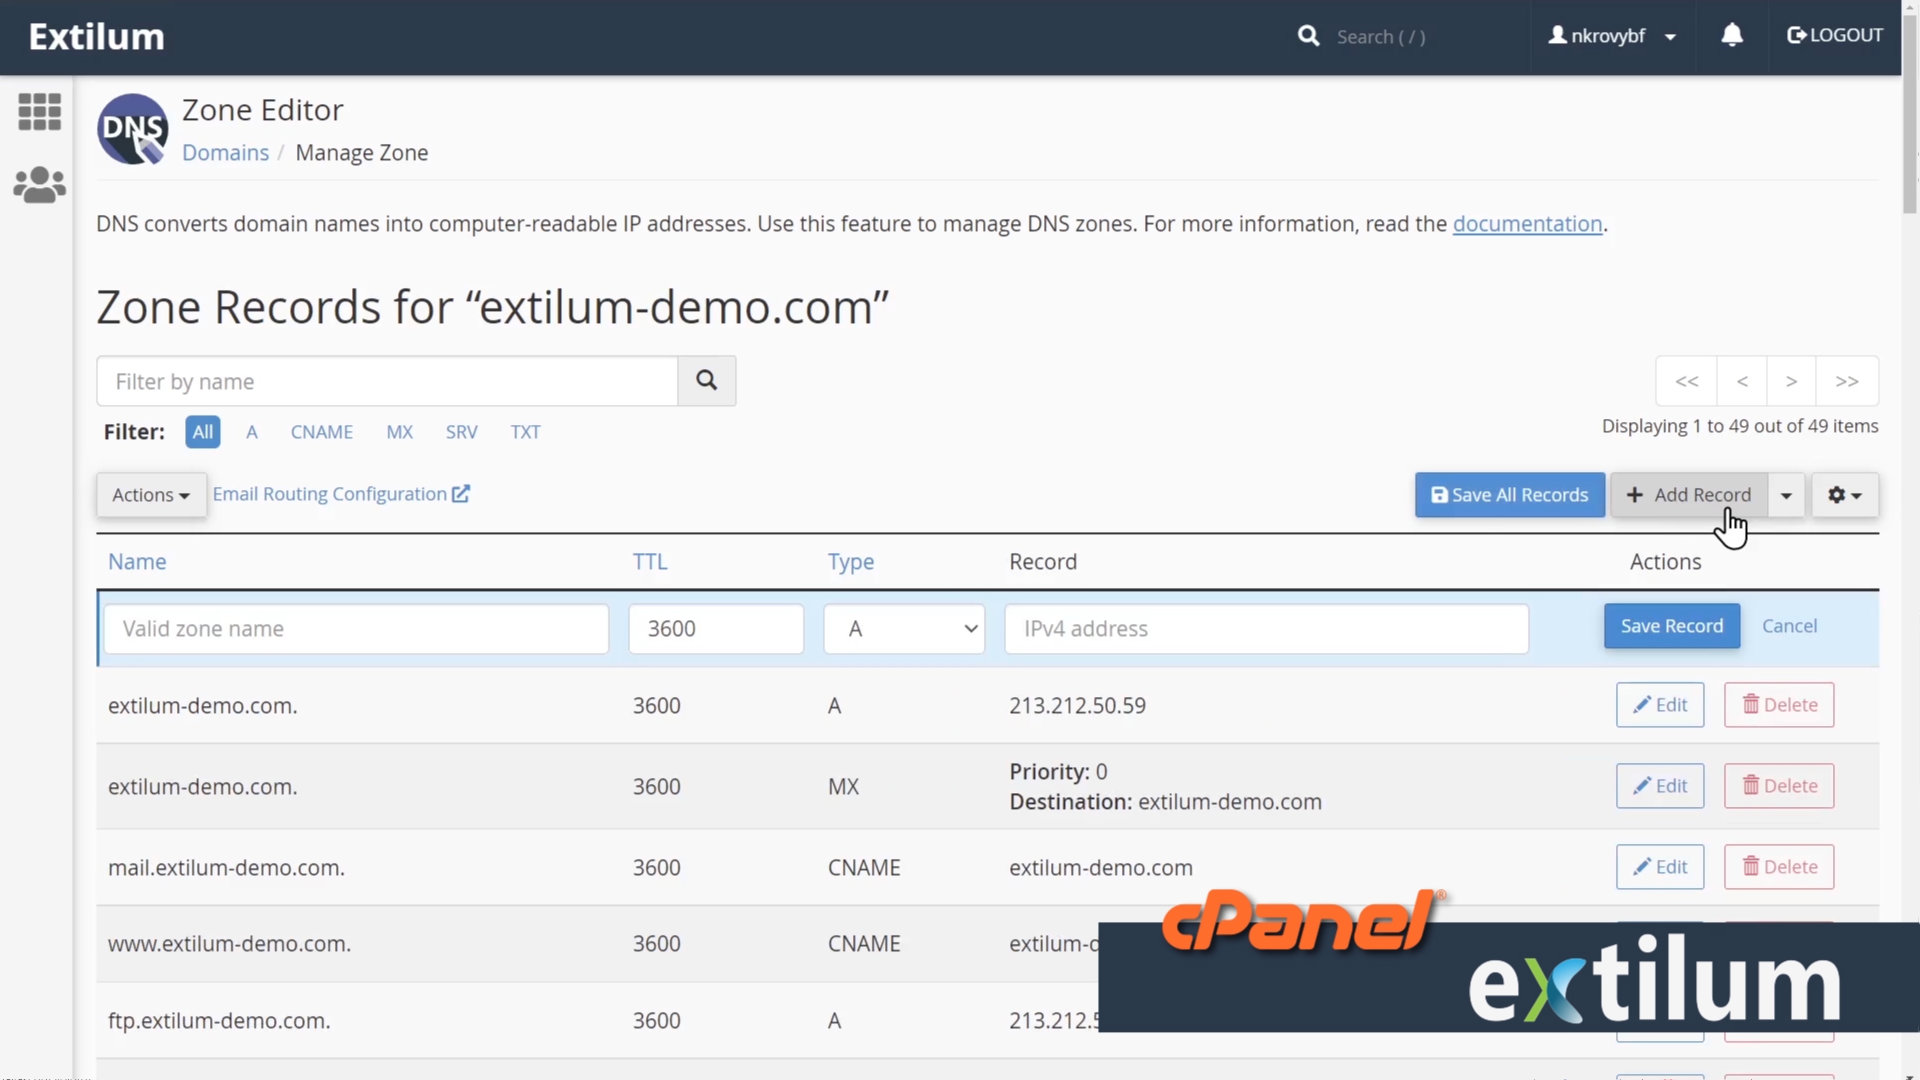 Extilum cPanel - Domain - Zone Editor